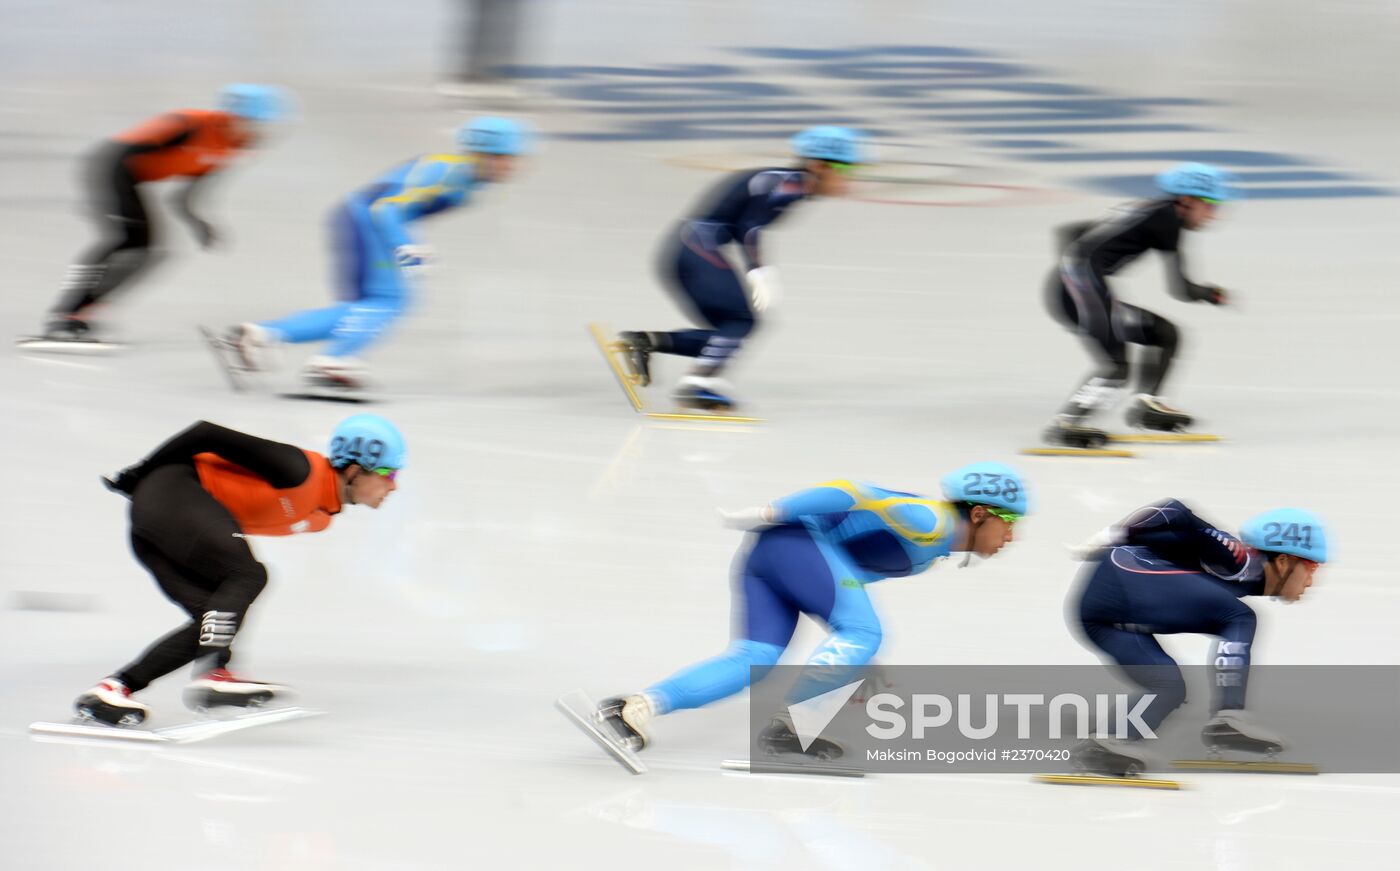 2014 Winter Olympics. Short track speed skating. Men. Relay. Semifinals